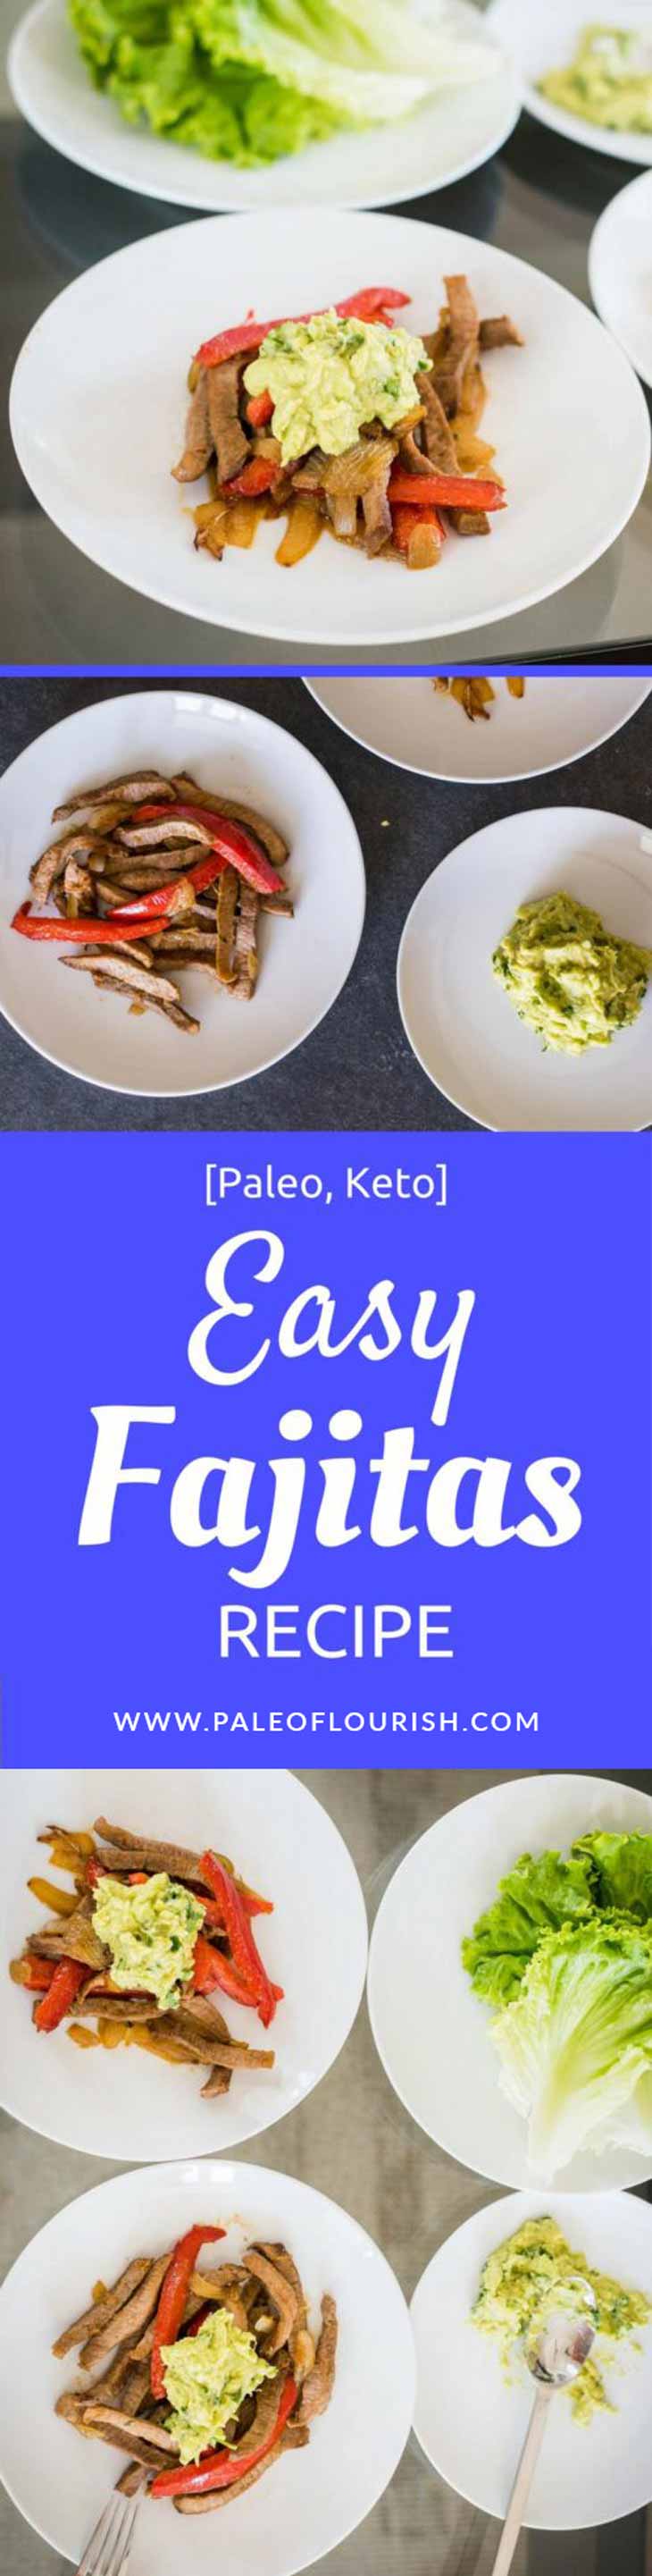 Easy Fajitas Recipe [Paleo, Keto] #paleo #keto #recipes - https://paleoflourish.com/easy-fajitas-recipe